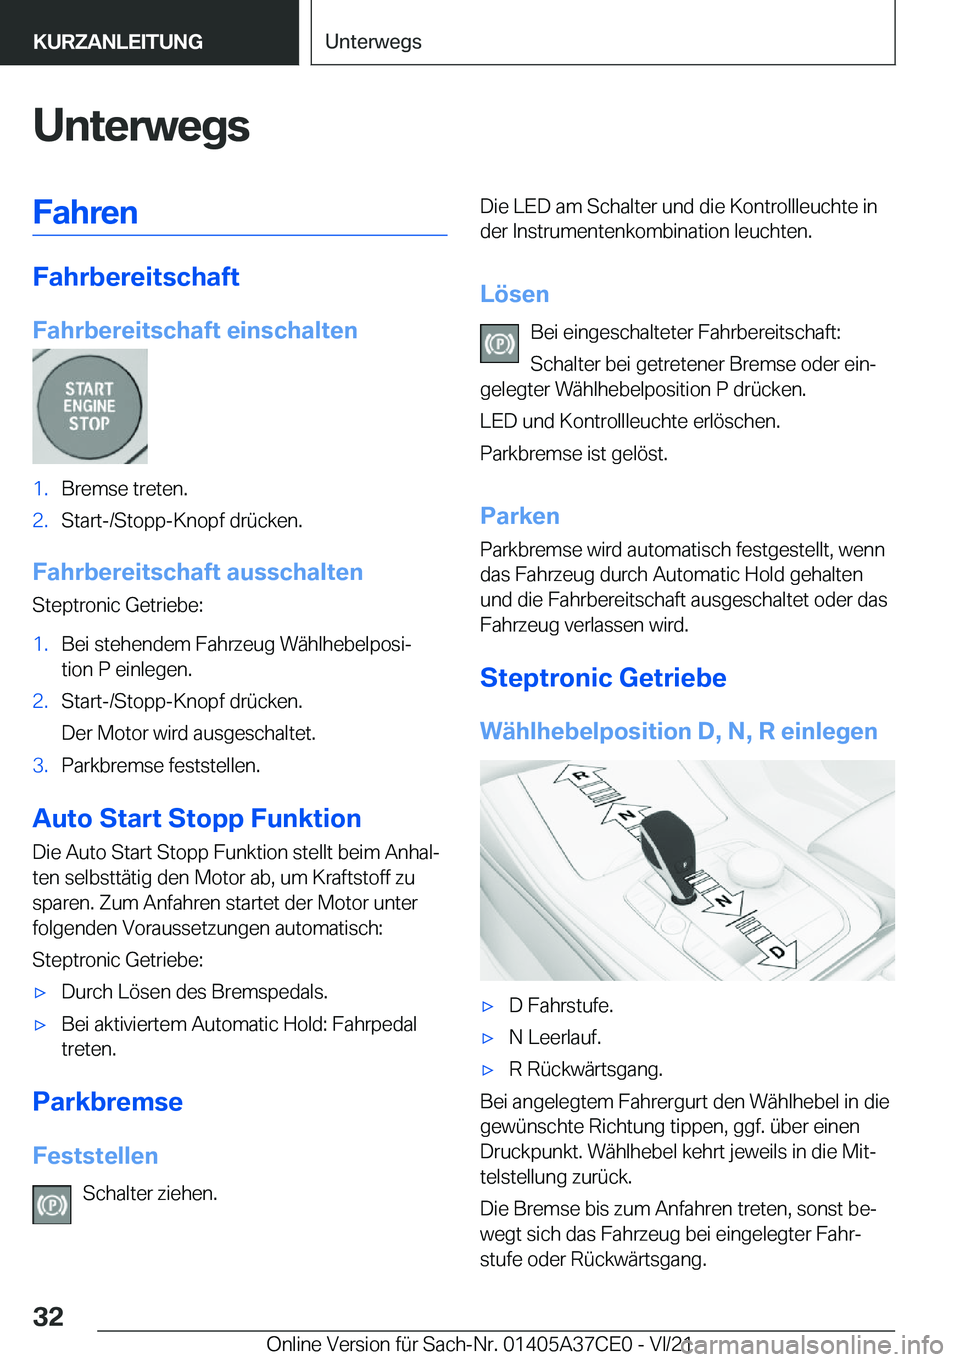 BMW X5 2022  Betriebsanleitungen (in German) �U�n�t�e�r�w�e�g�s�F�a�h�r�e�n
�F�a�h�r�b�e�r�e�i�t�s�c�h�a�f�t
�F�a�h�r�b�e�r�e�i�t�s�c�h�a�f�t��e�i�n�s�c�h�a�l�t�e�n
�1�.�B�r�e�m�s�e��t�r�e�t�e�n�.�2�.�S�t�a�r�t�-�/�S�t�o�p�p�-�K�n�o�p�f��d�r�